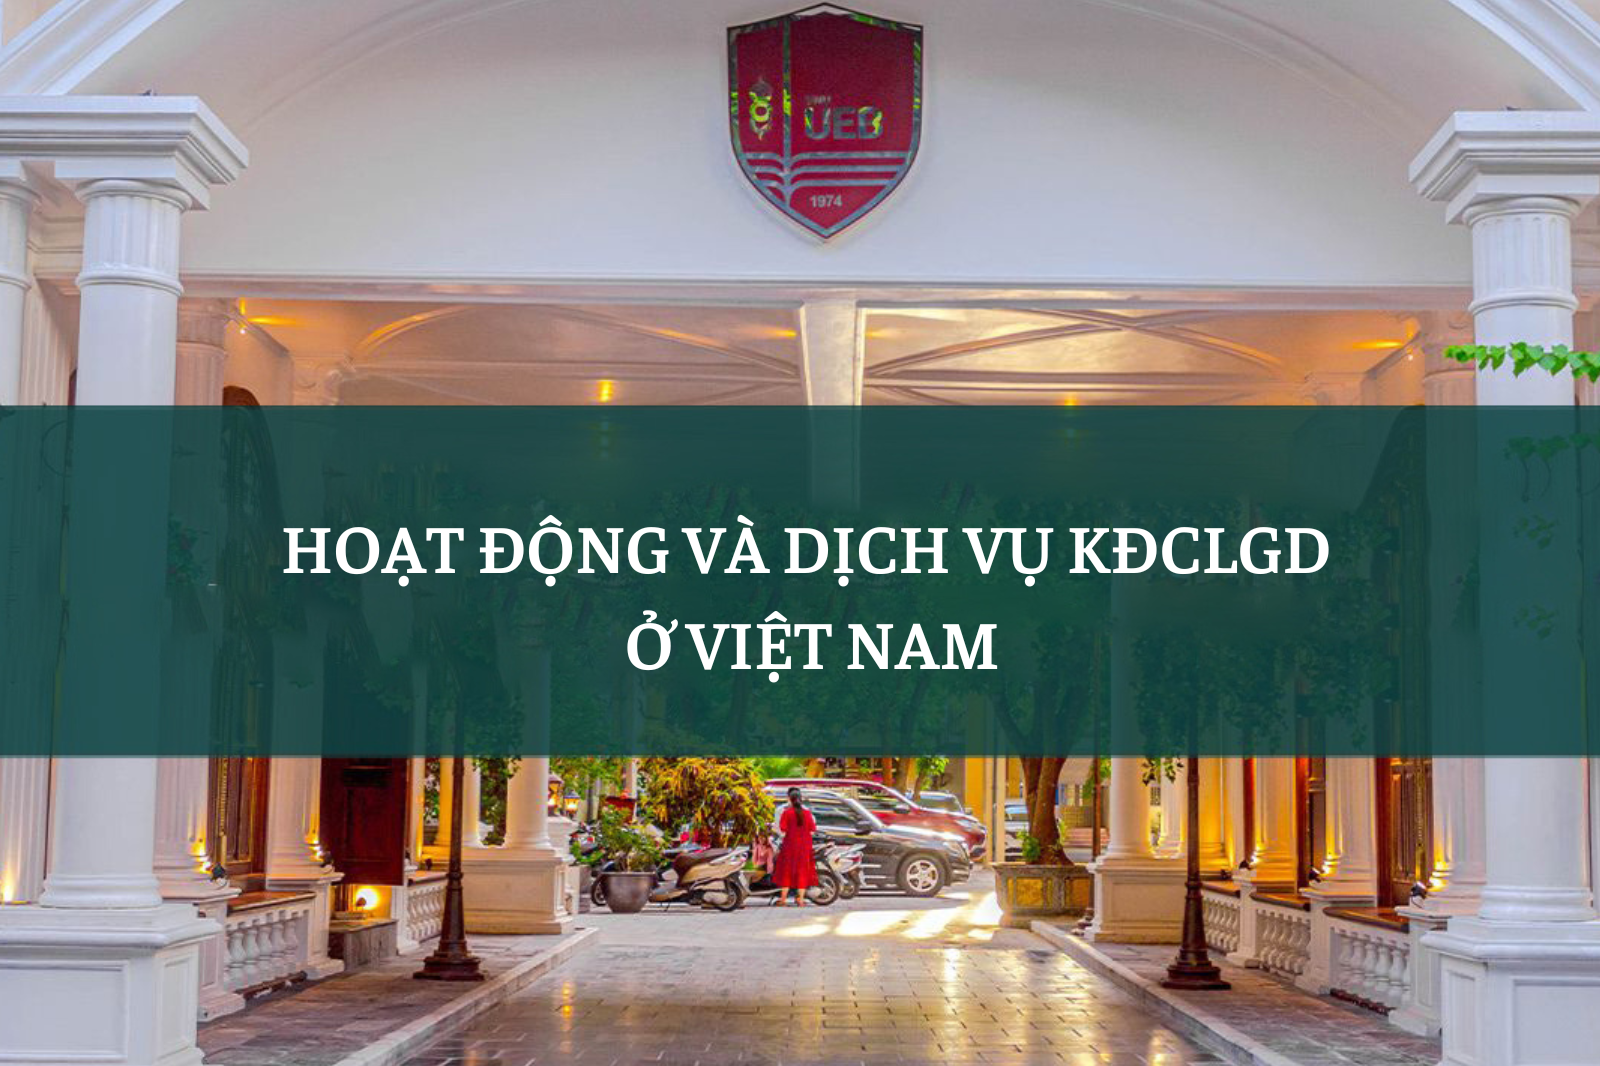 Hoạt động và dịch vụ kiểm định chất lượng tại Việt Nam hiện nay